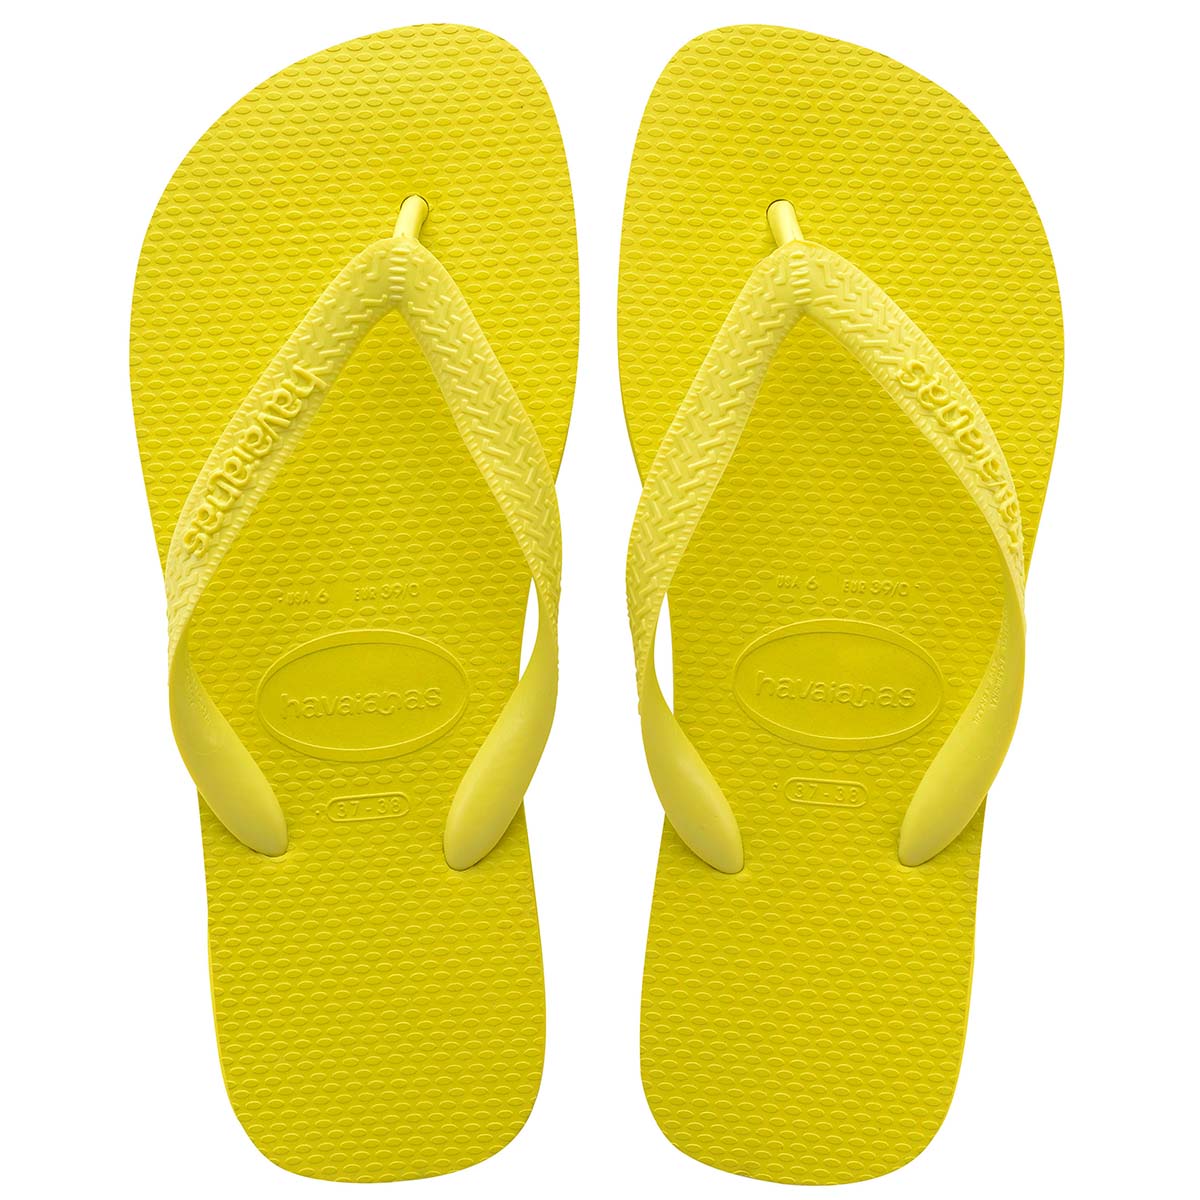 Havaianas Top Unisex Erwachsene Sandalen Zehentrenner Badelatschen 4000029 Gelb 